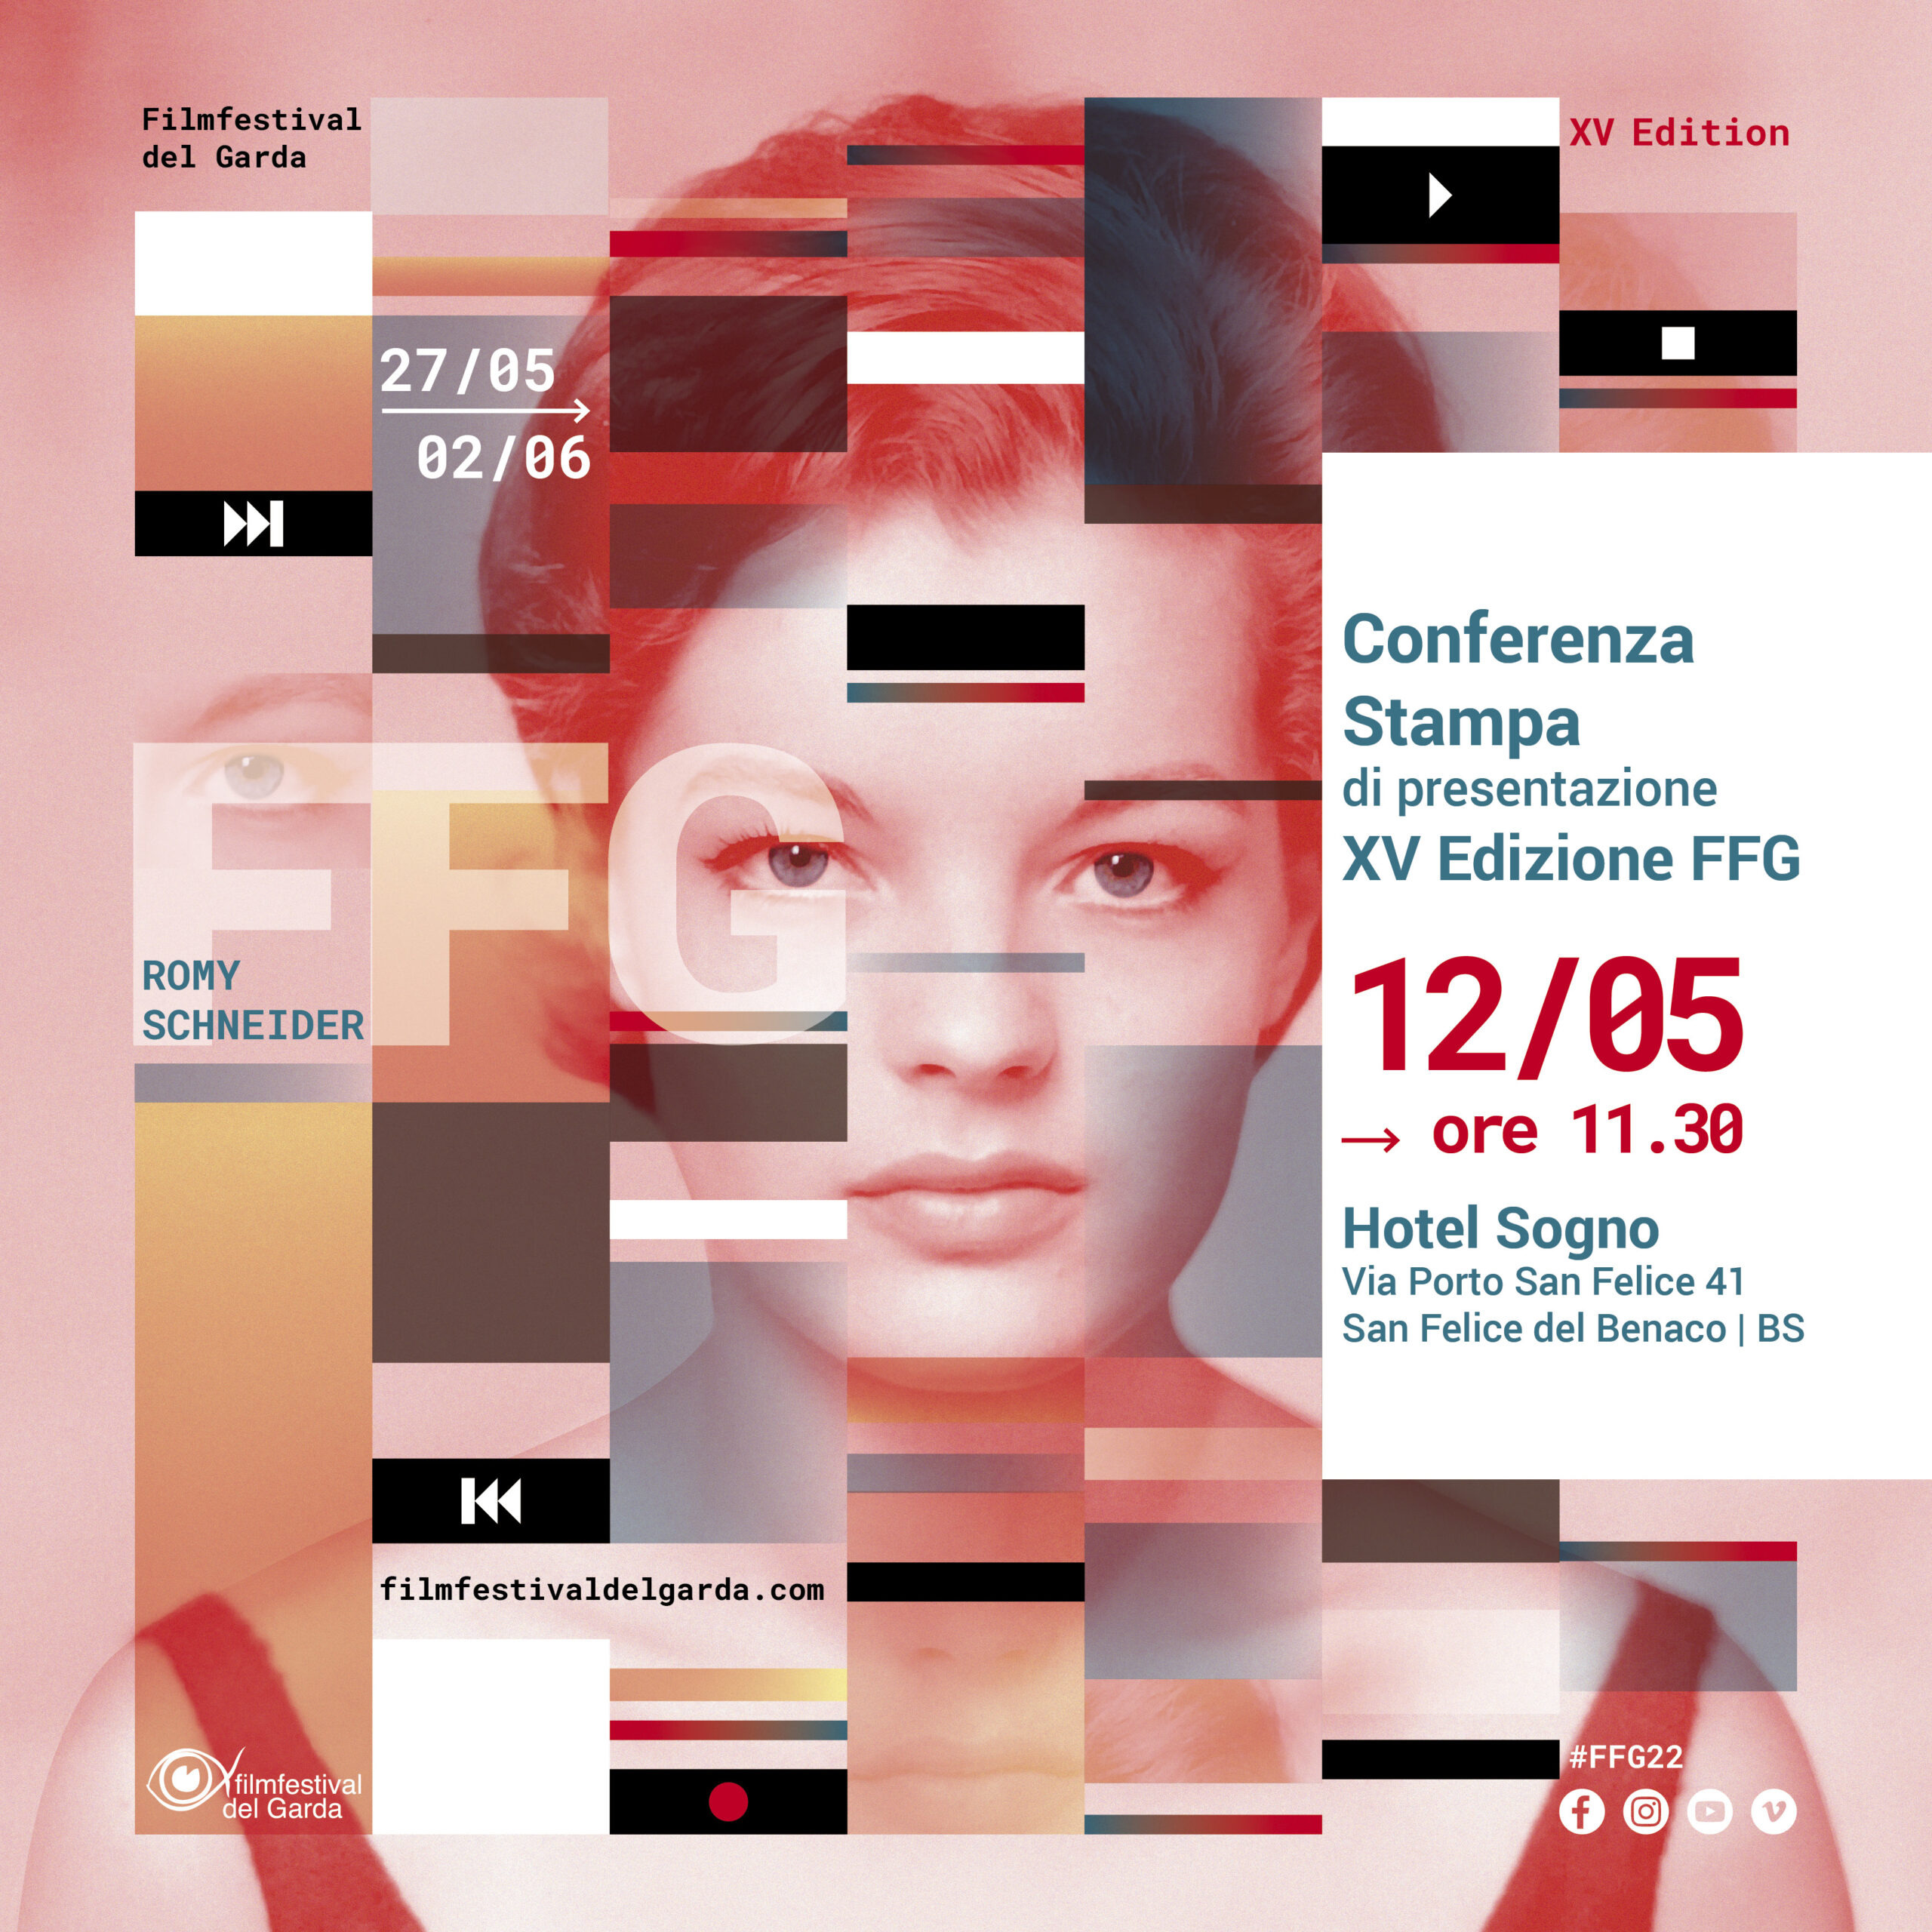 Conferenza stampa di presentazione XV Edizione Filmfestival del Garda